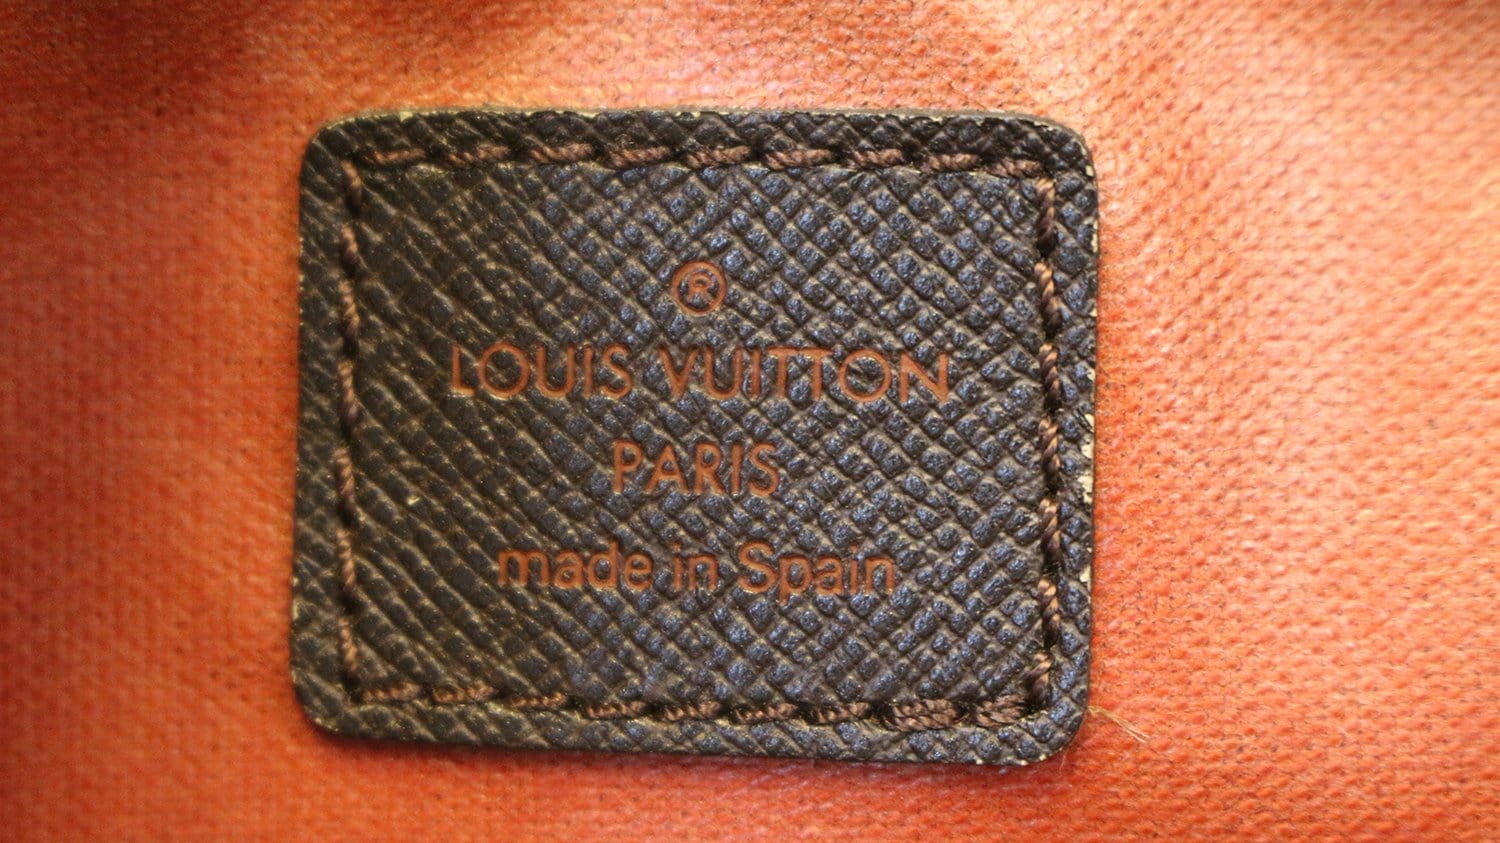 Authentic Louis Vuitton Damier Ebene Cosmetic Pouch – Paris Station Shop